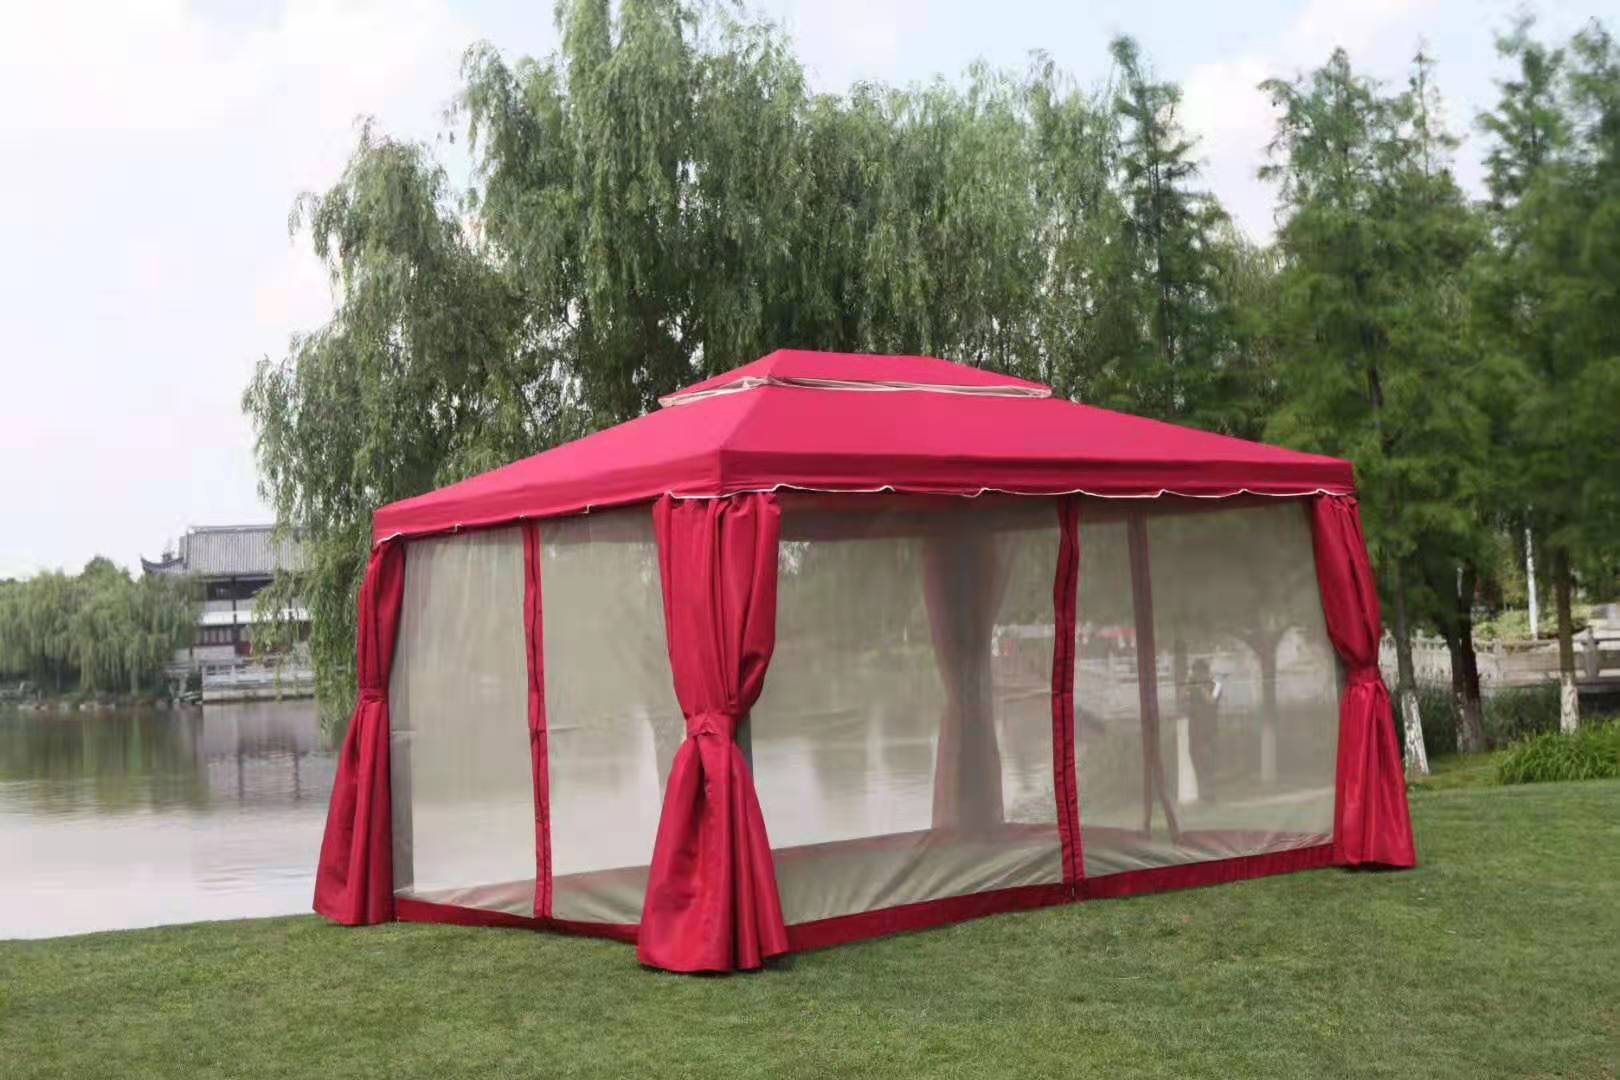 昆明罗马篷定制|四角尖顶篷订做|遮阳帐篷安装|推拉帐篷定制|太阳伞哪里好图片